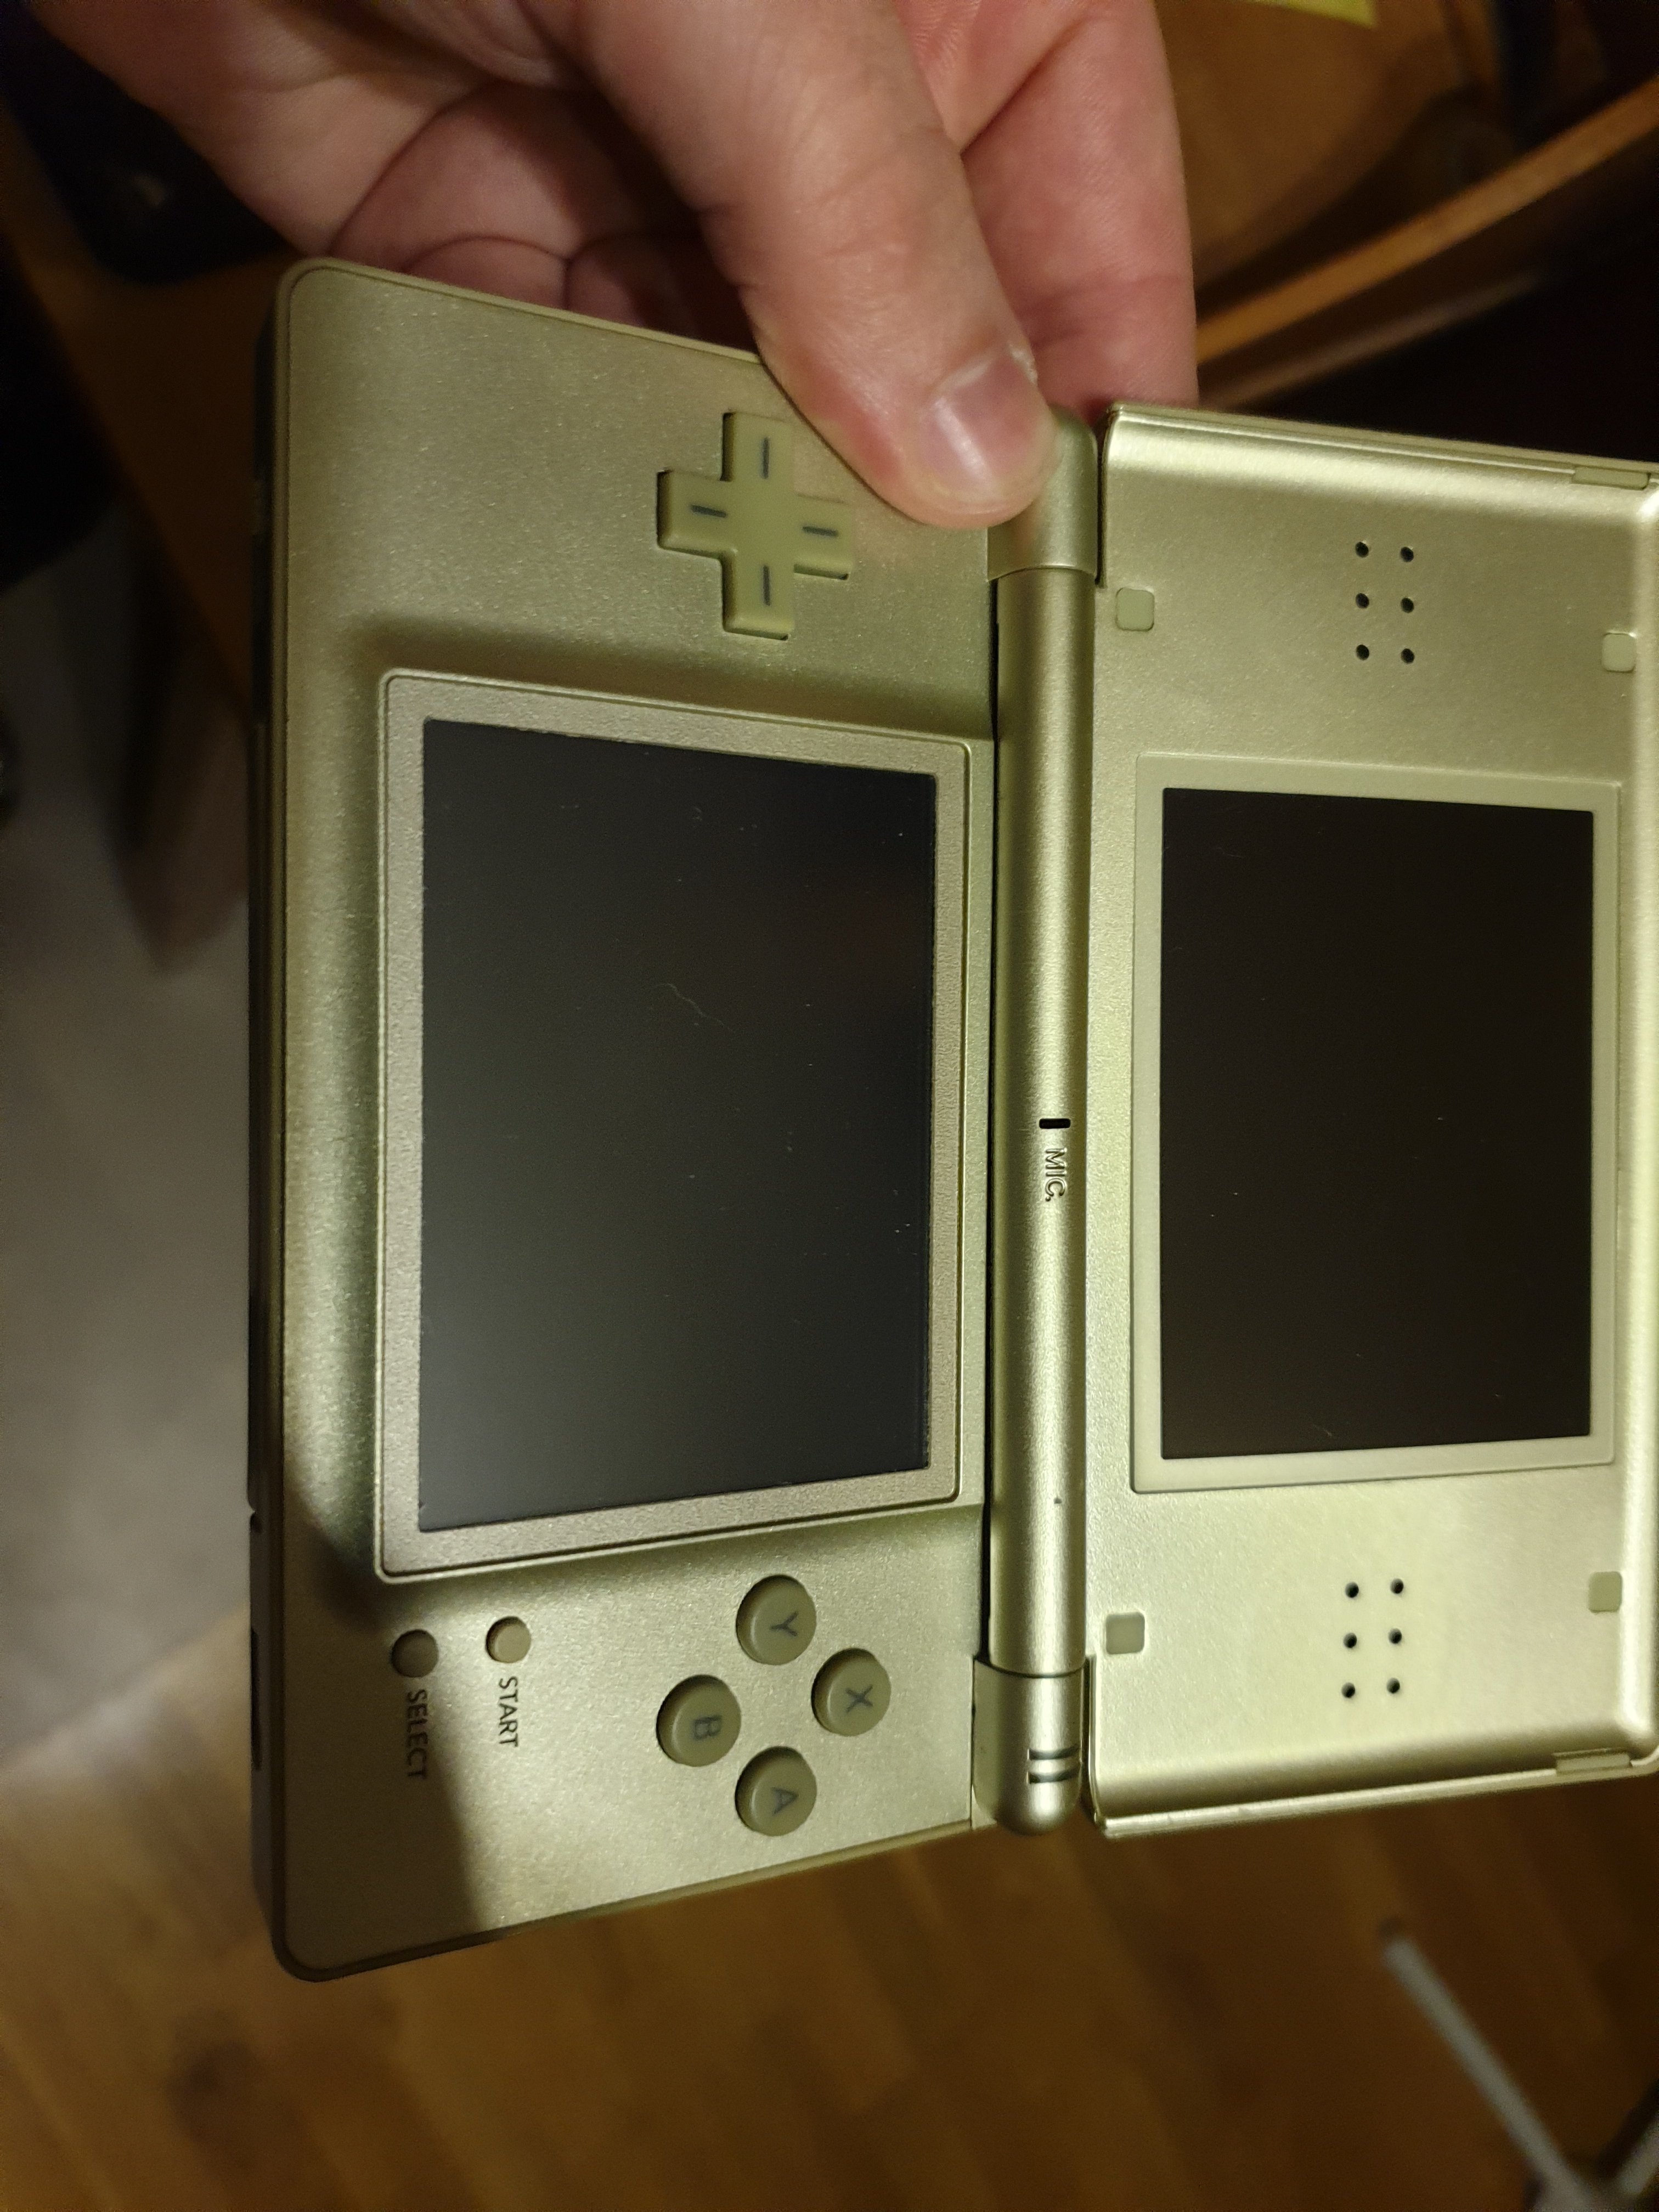 Comment reconnaitre une contrefaçon d'un jeu Nintendo DS original?